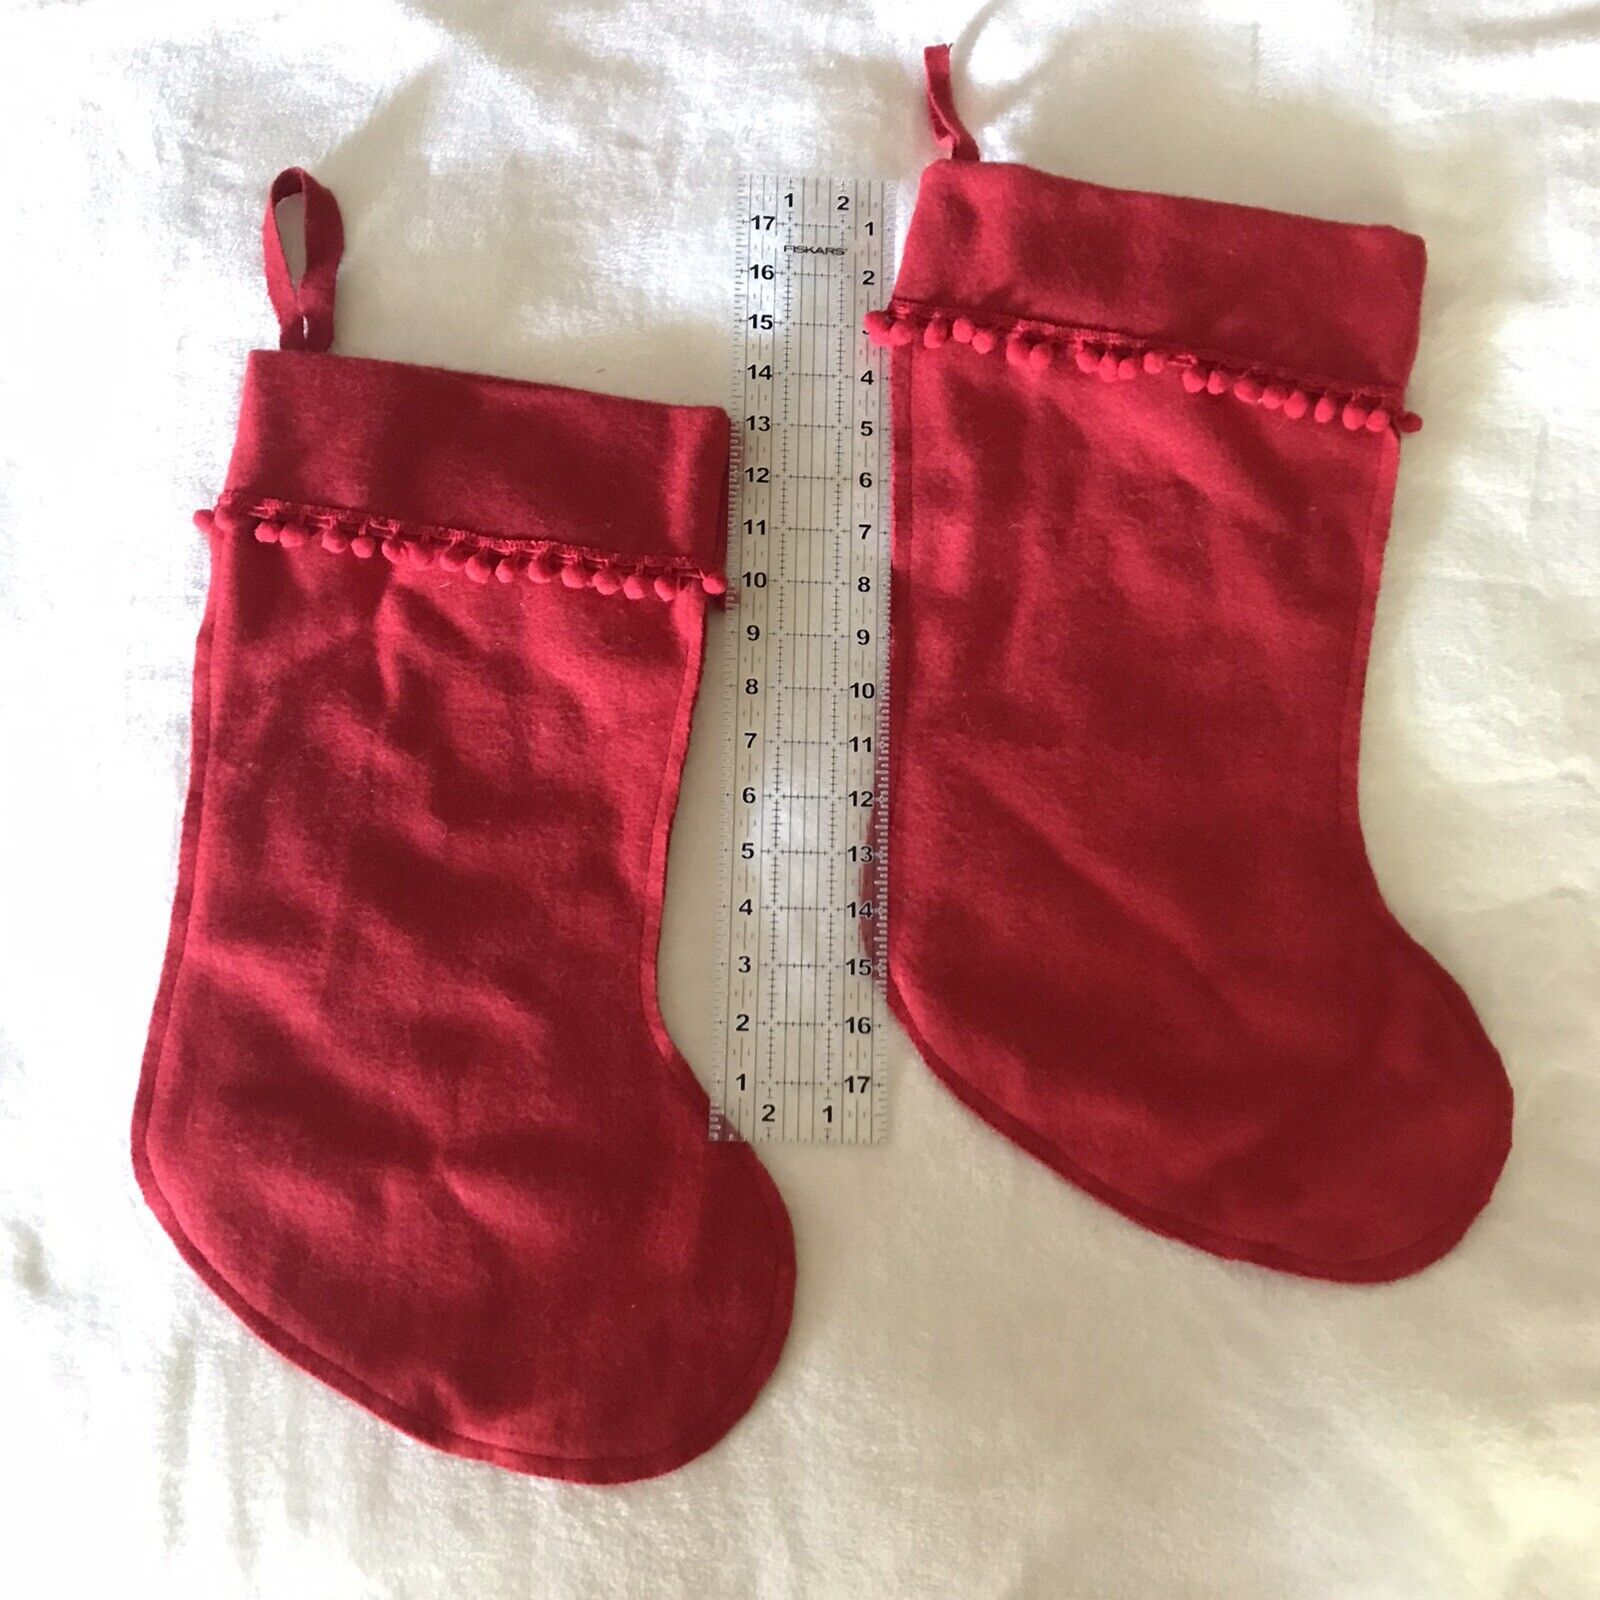 2 Vintage Red Felt Stockings Merry Christmas Jingle Bells Santa Ball Fringe New